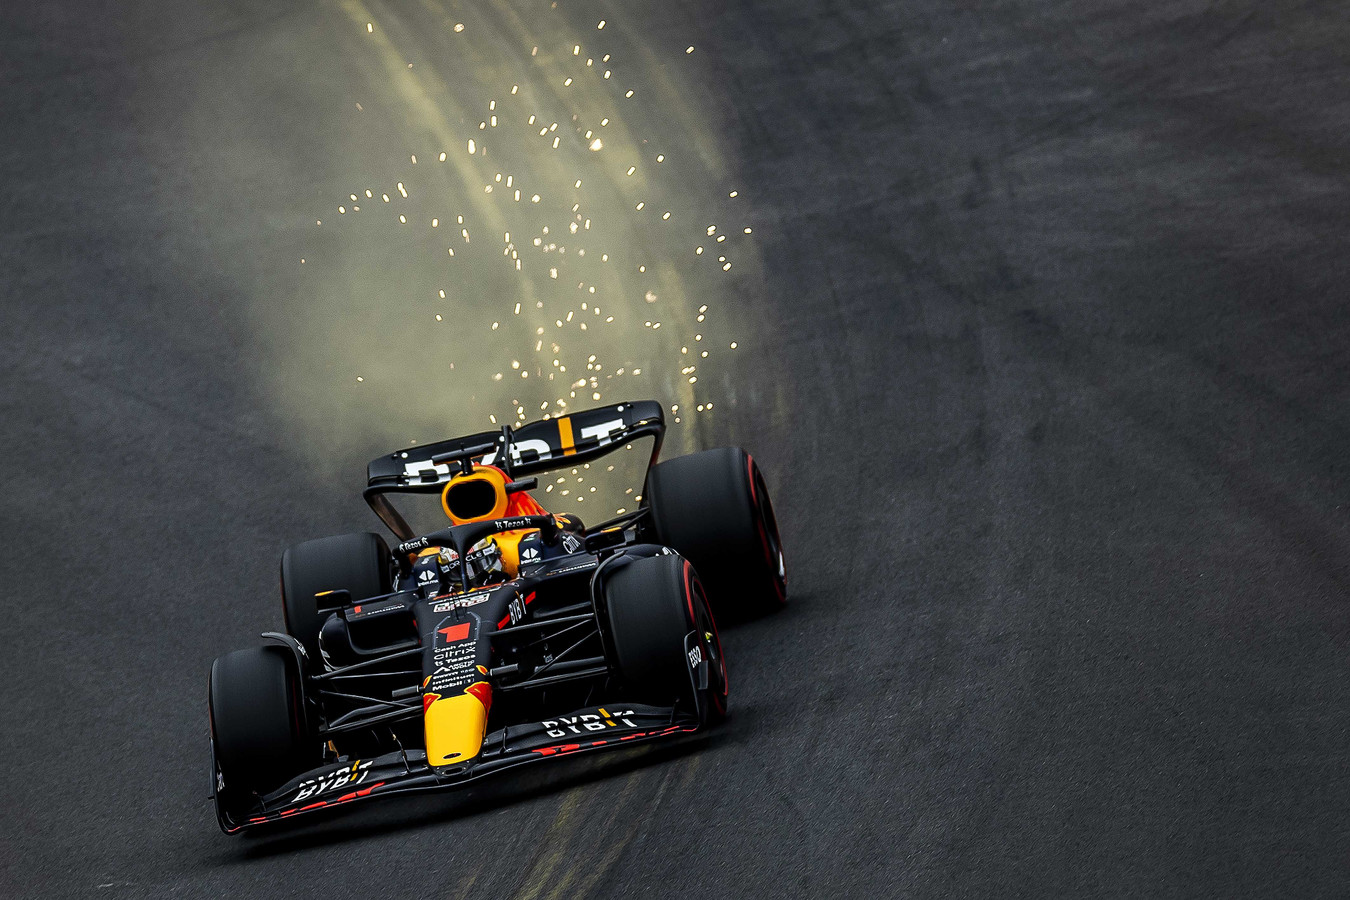 Vooruit Filosofisch Vlekkeloos Max Verstappen domineert Spa, Lewis Hamilton crasht en Leclerc verliest  punten: bekijk alle video's terug van de GP van België | Foto | ed.nl